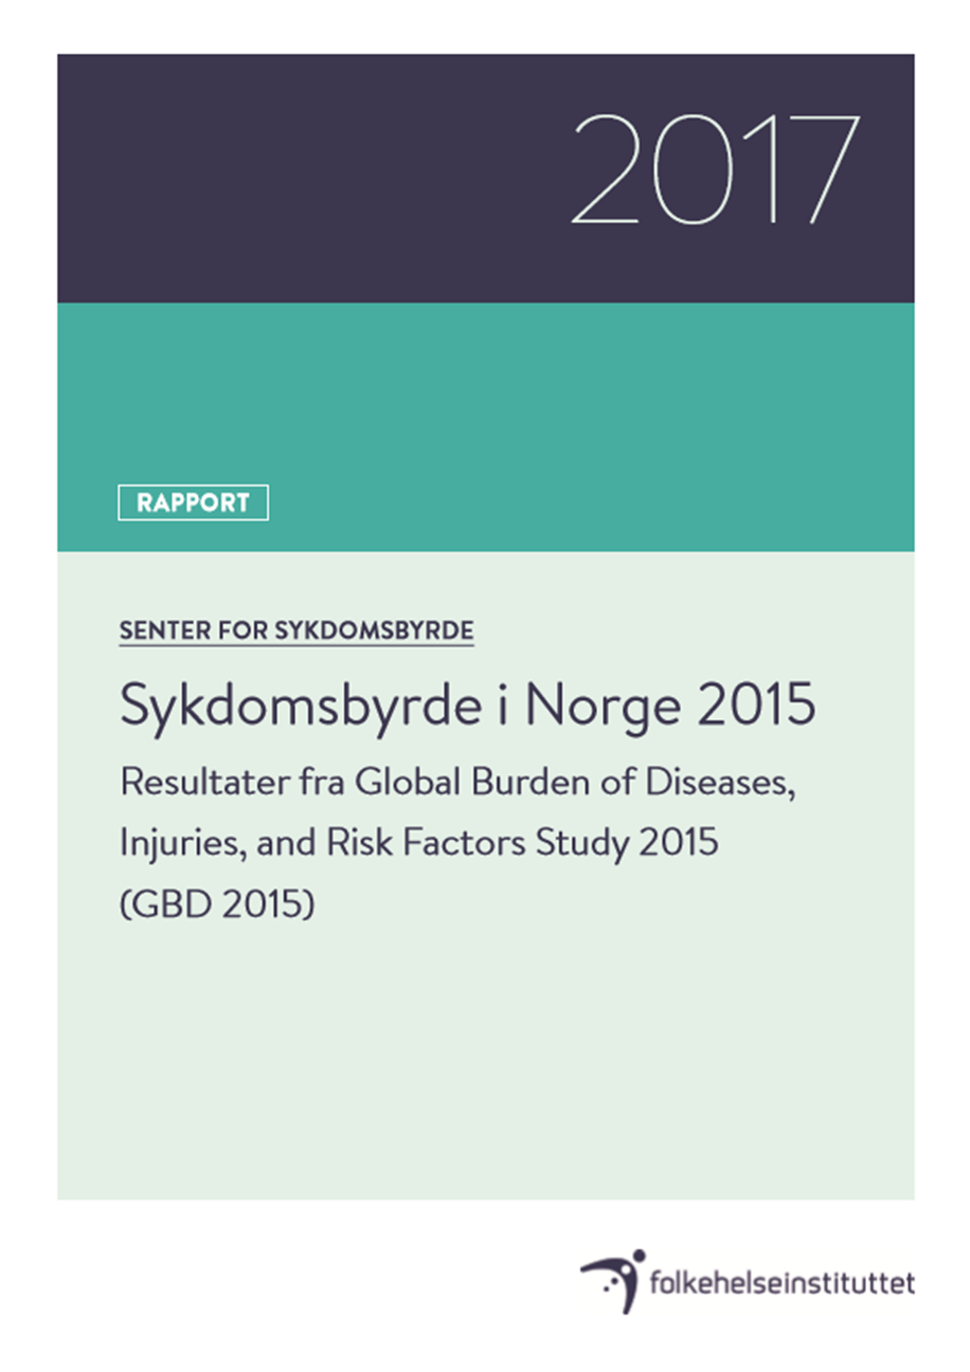 Sykdomsbelastning i Norge 2015